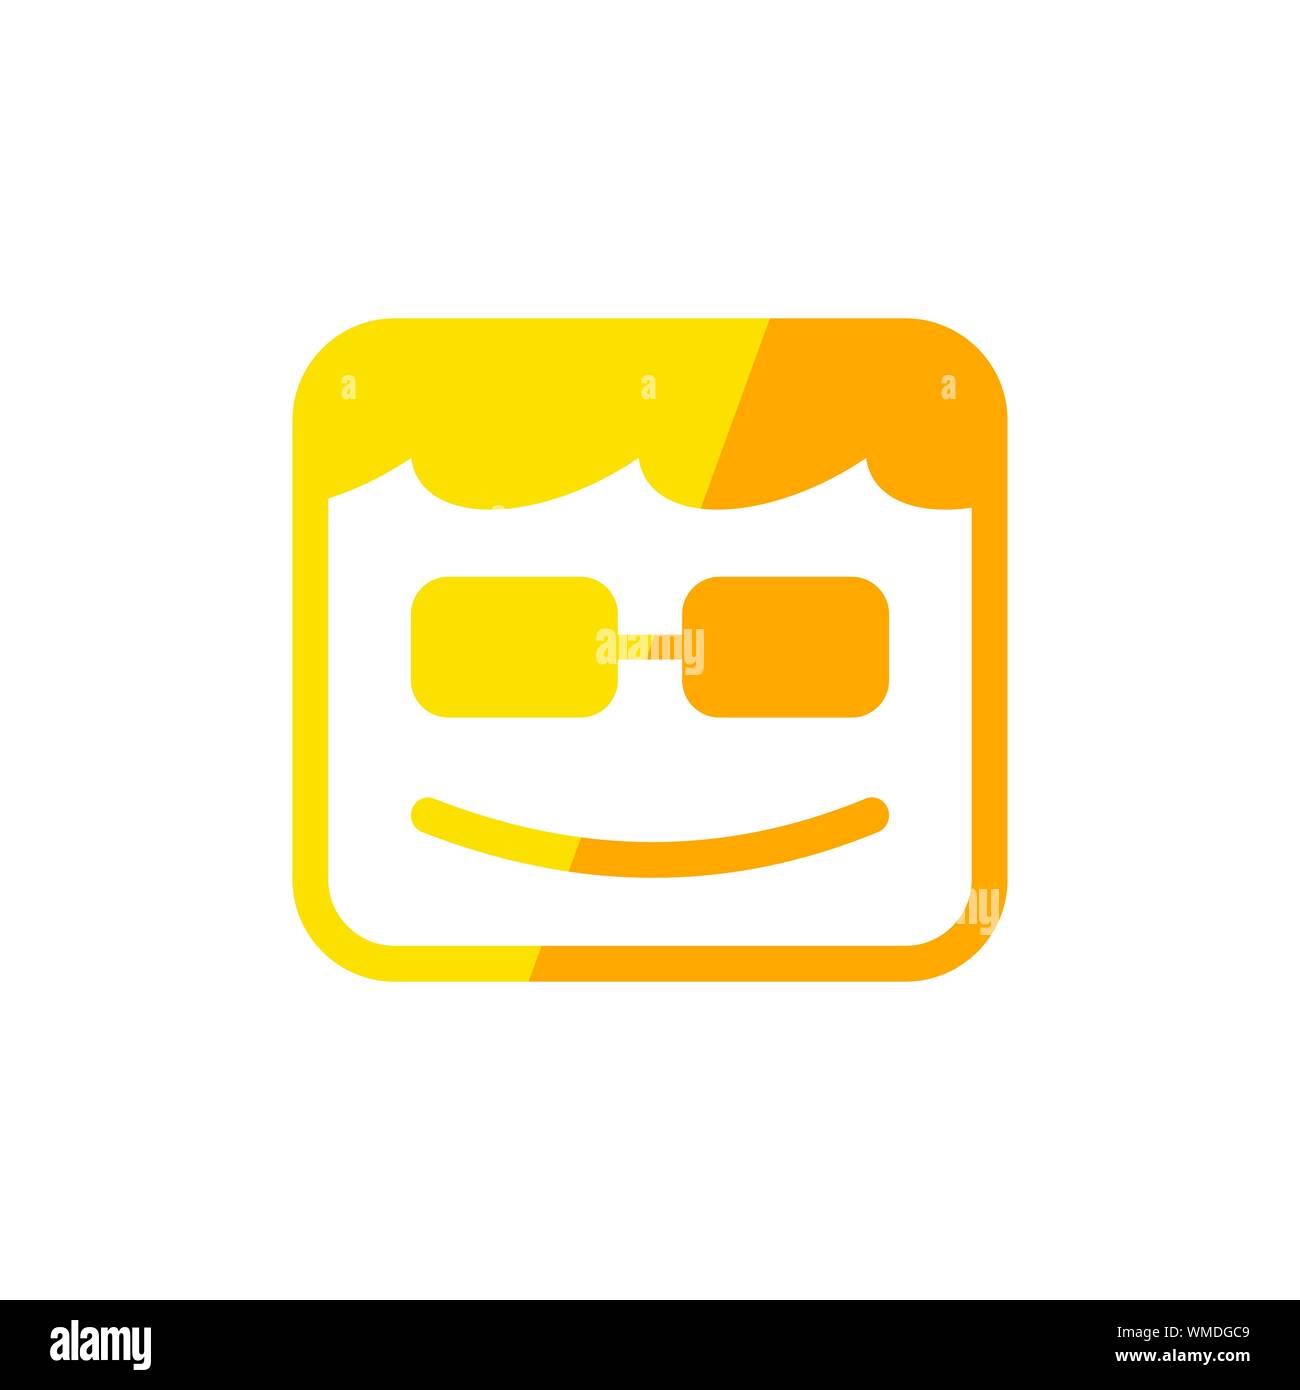 Geek sorriso scatola di forma quadrata gialla simbolo vettore Logo grafico del modello di progettazione Illustrazione Vettoriale